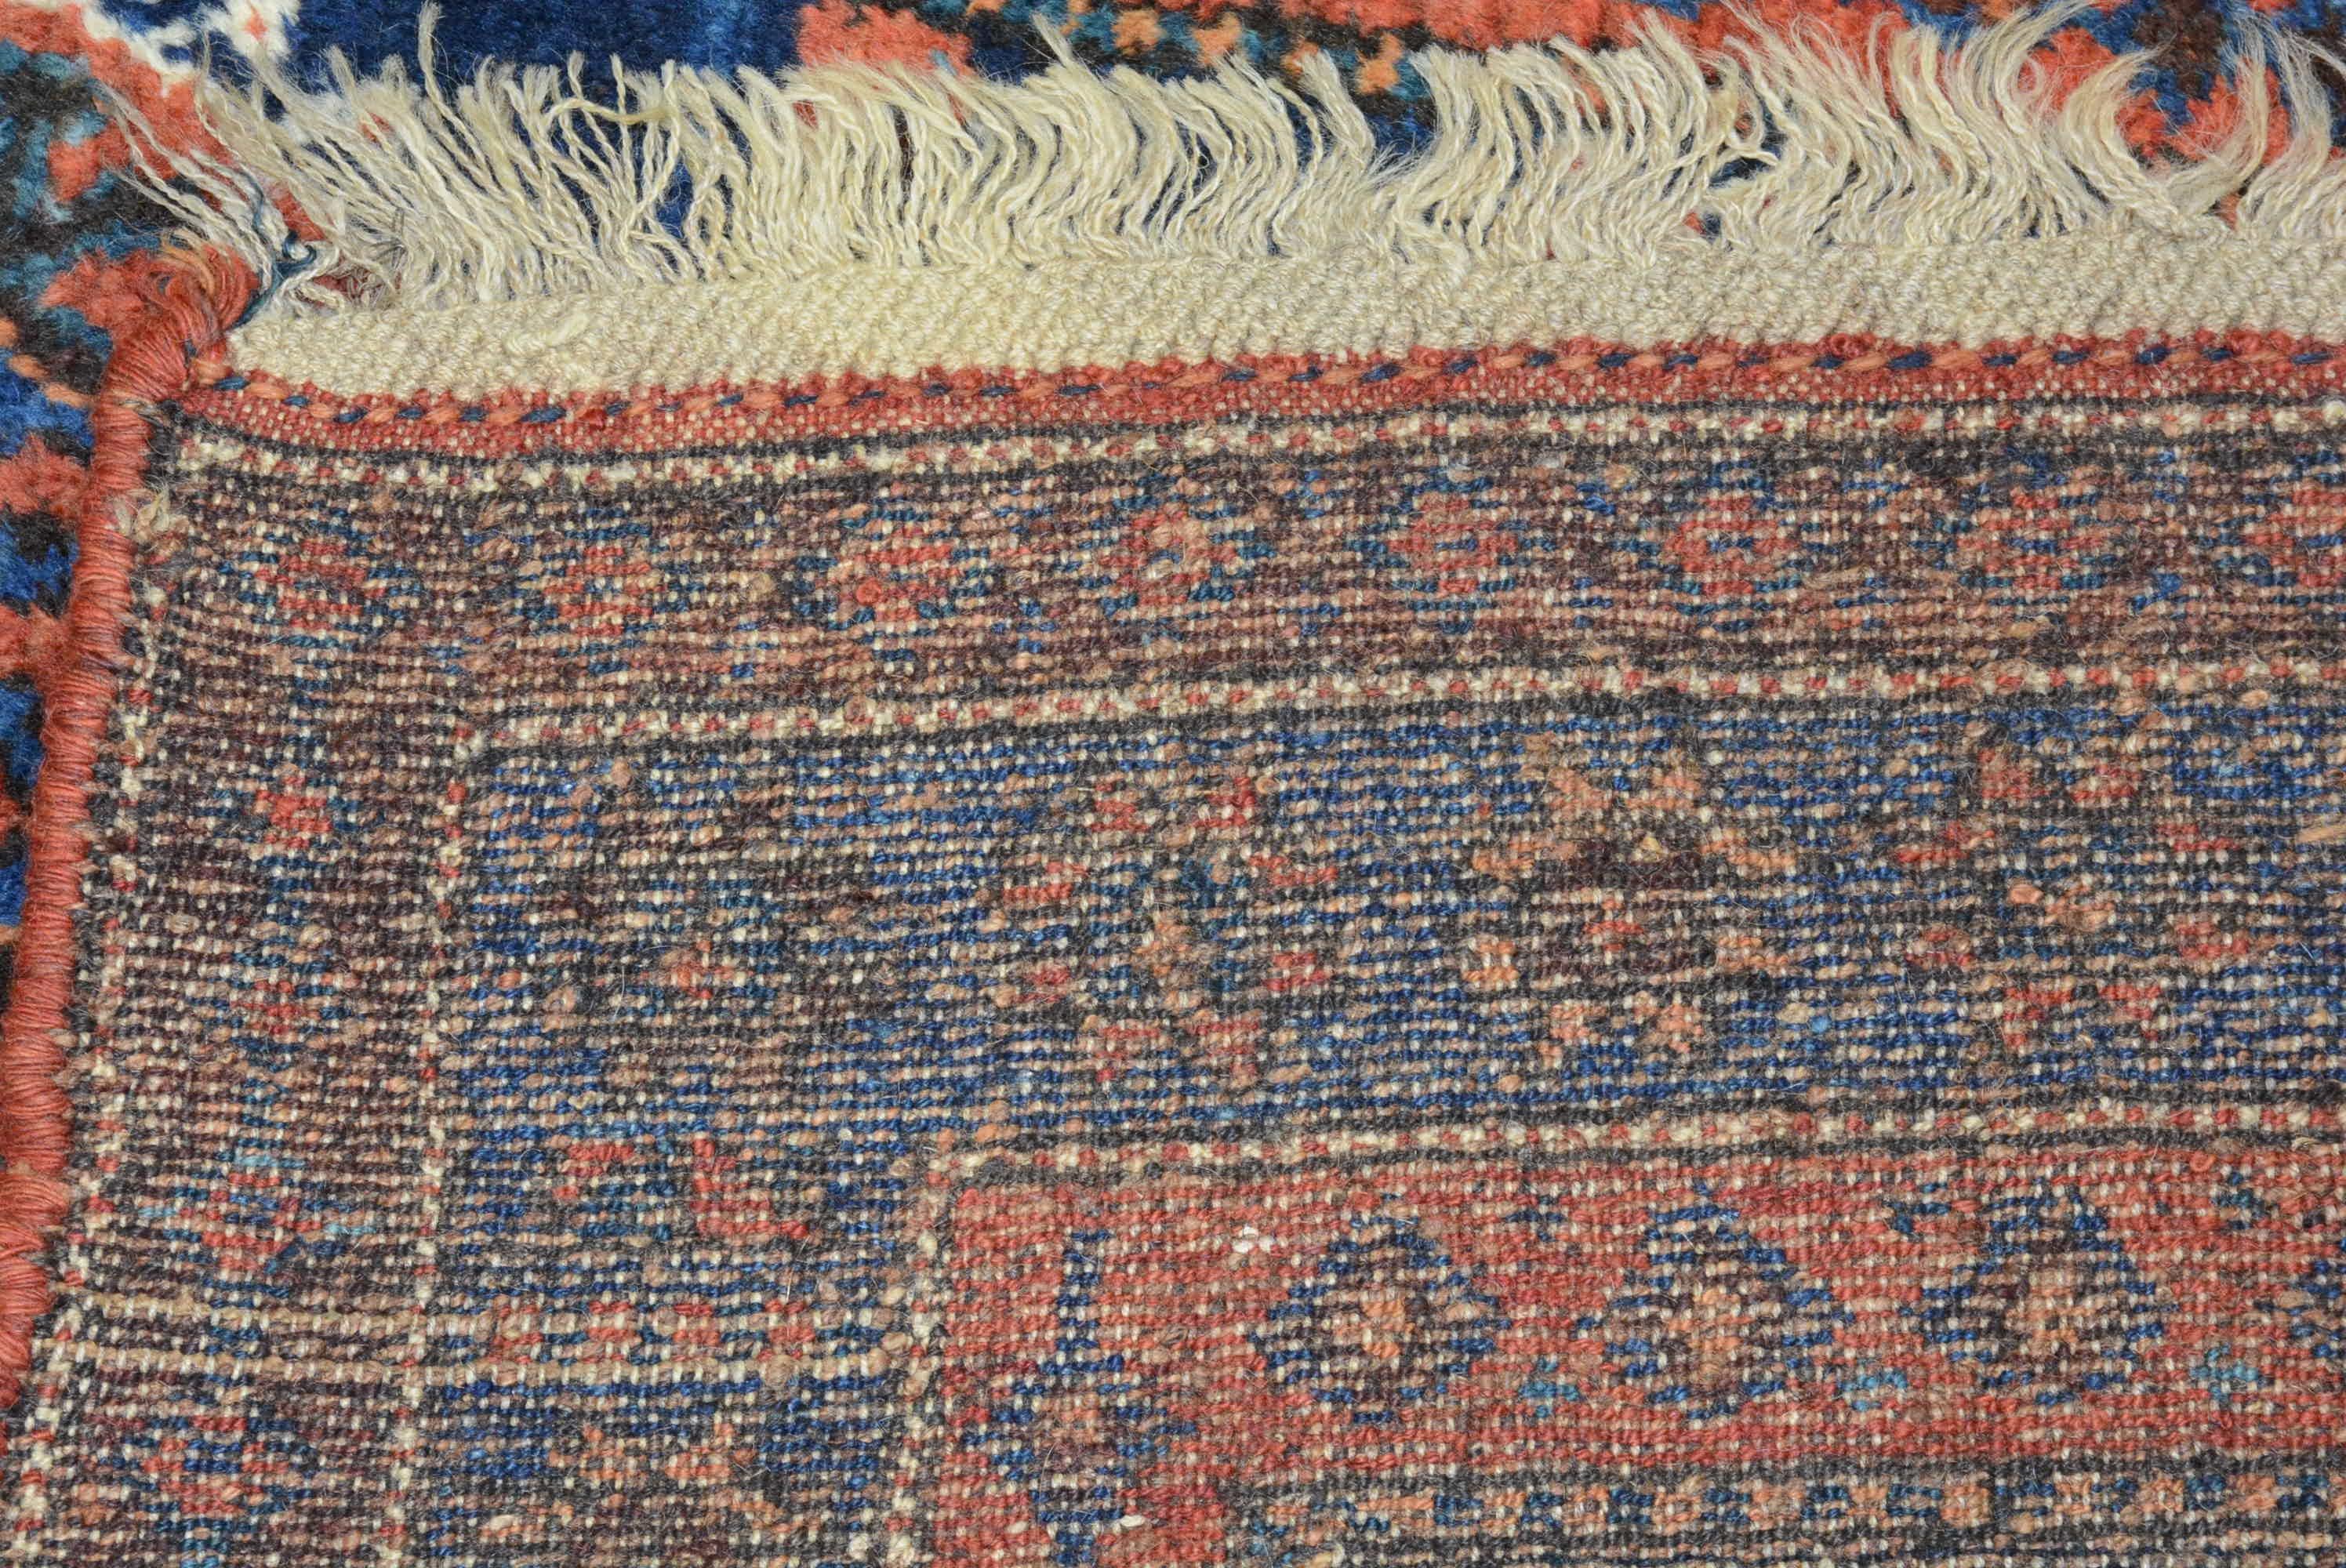 Dieser antike kurdische Teppich aus Westpersien wurde im späten 19. Jahrhundert gewebt. Das sich wiederholende Muster aus sechseckigen Medaillons auf dem indigoblauen Feld ist mit stilisierten Tierköpfen gefüllt, die von ähnlichen Mustern der